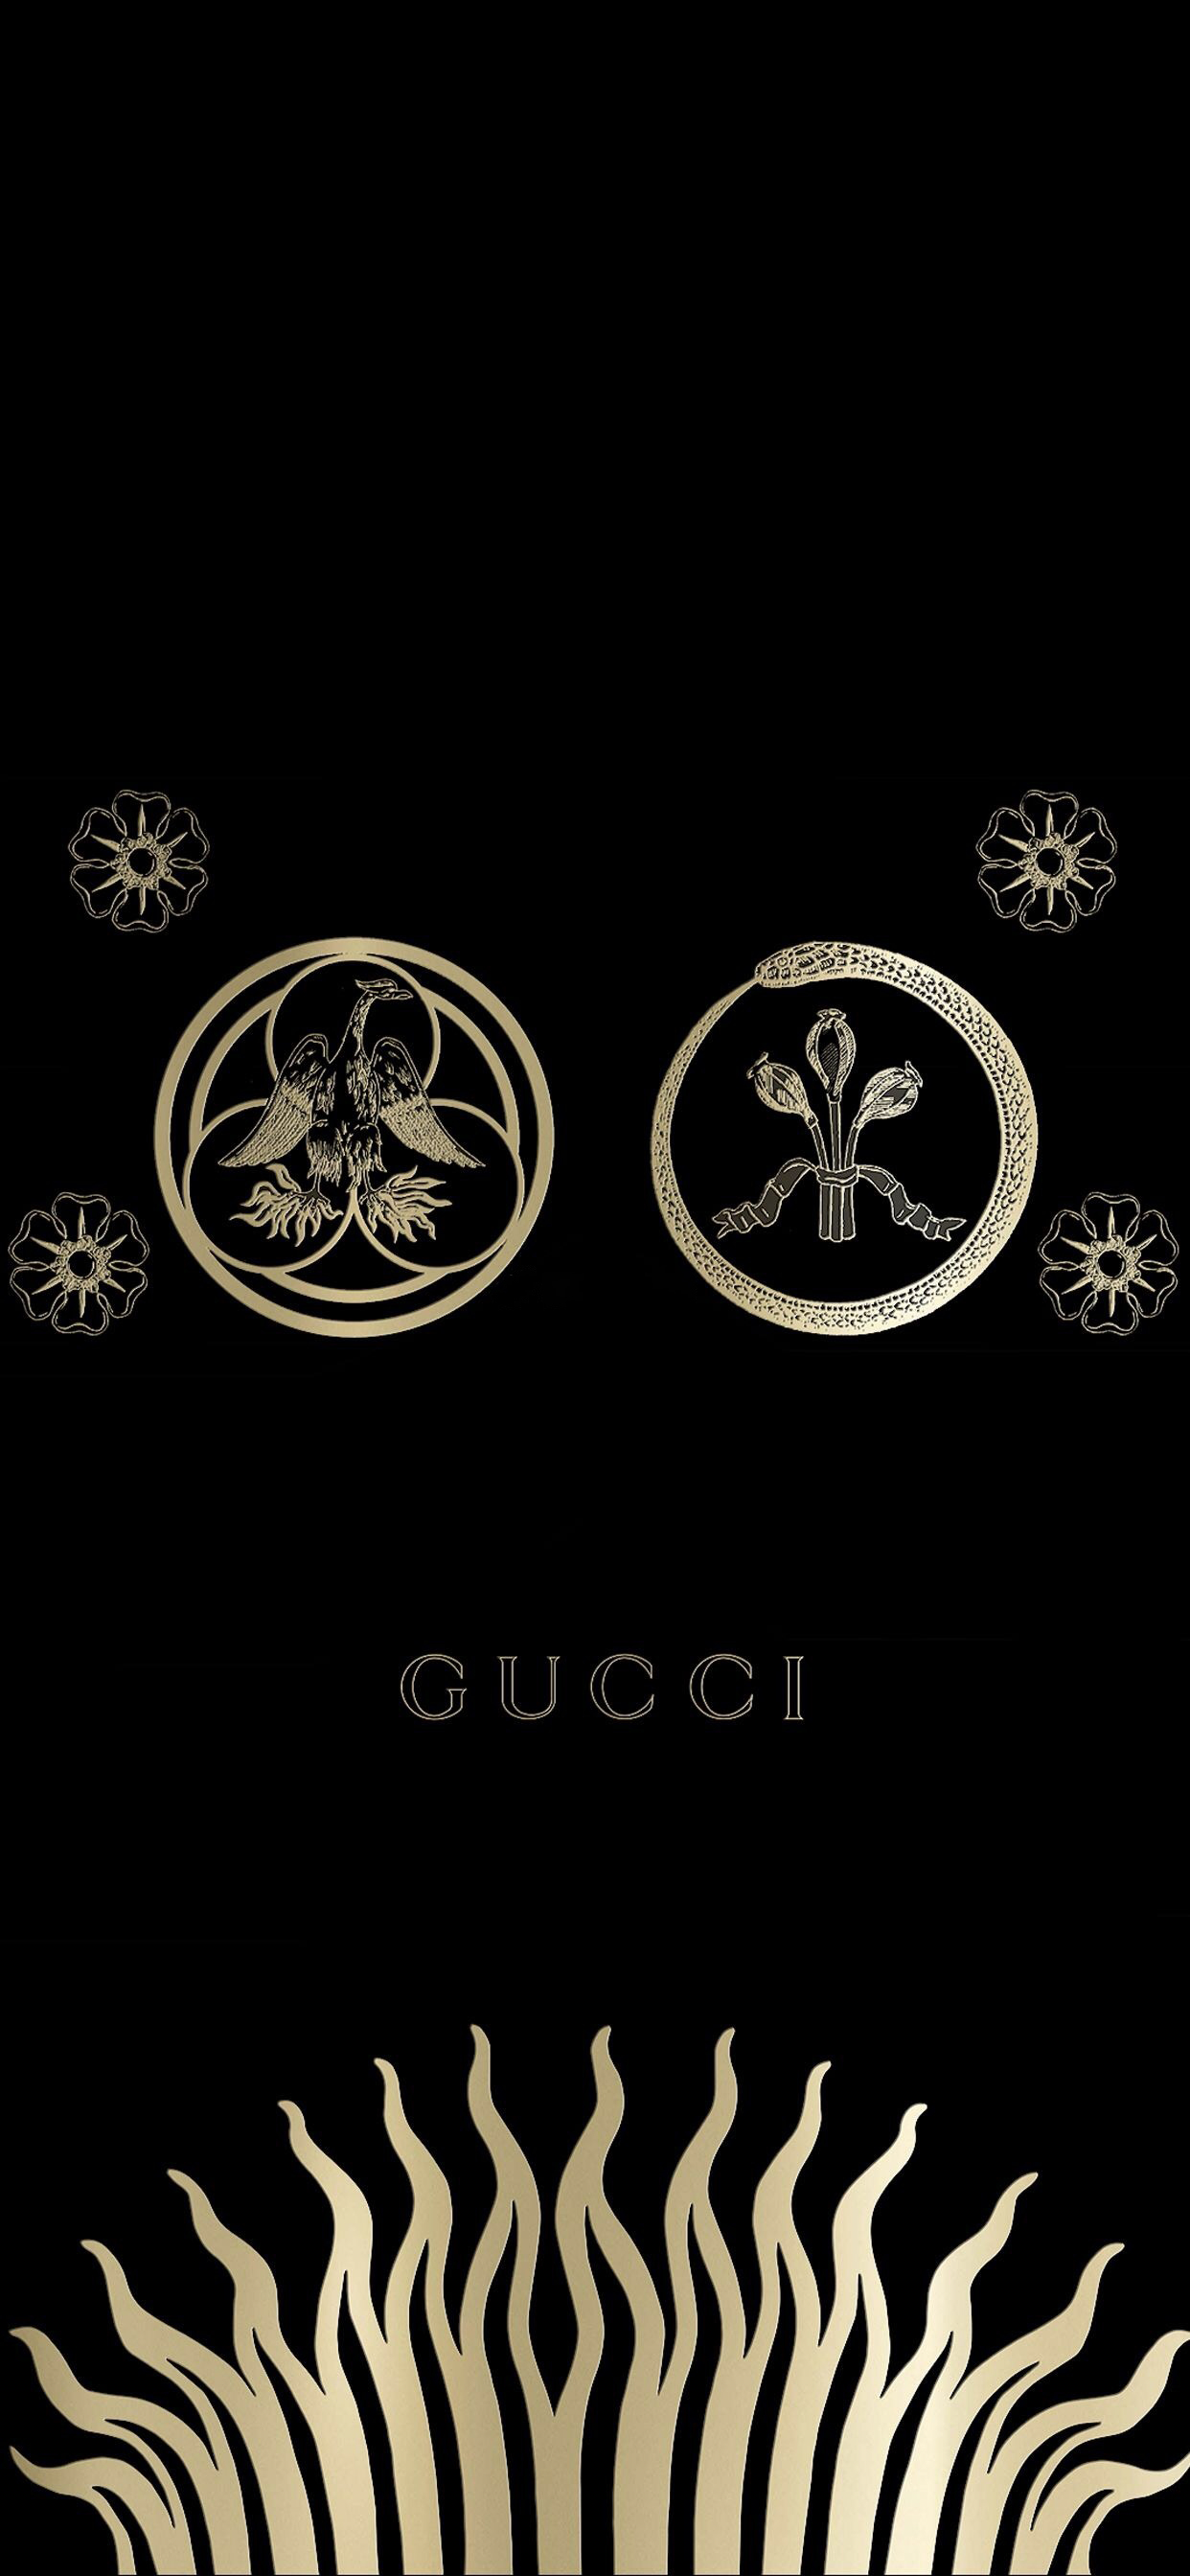 Hình ảnh Gucci đẹp, ấn tượng, đẳng cấp, sang trọng